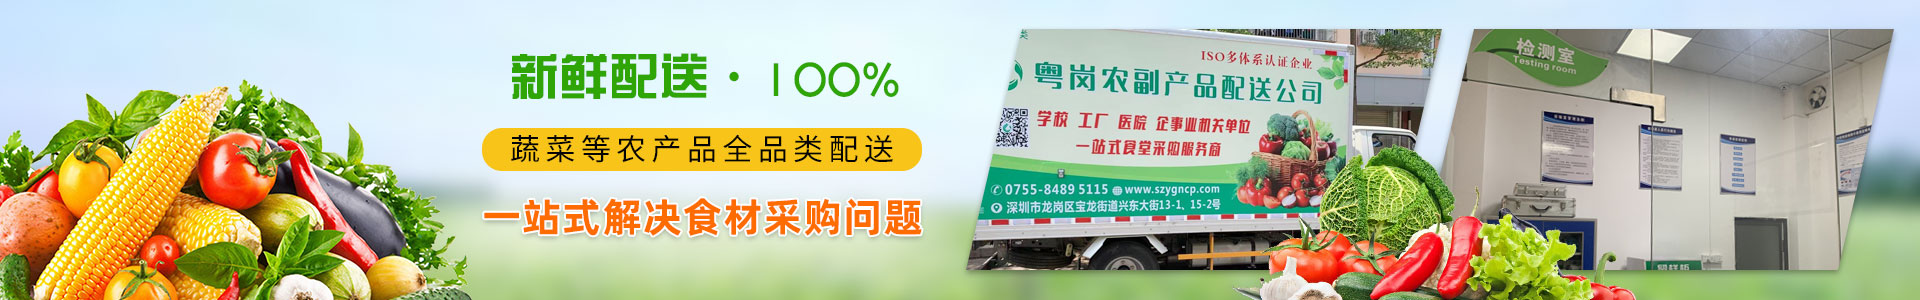 品牌荣誉AAAAA级绿色环保食品企业粤岗蔬菜配送